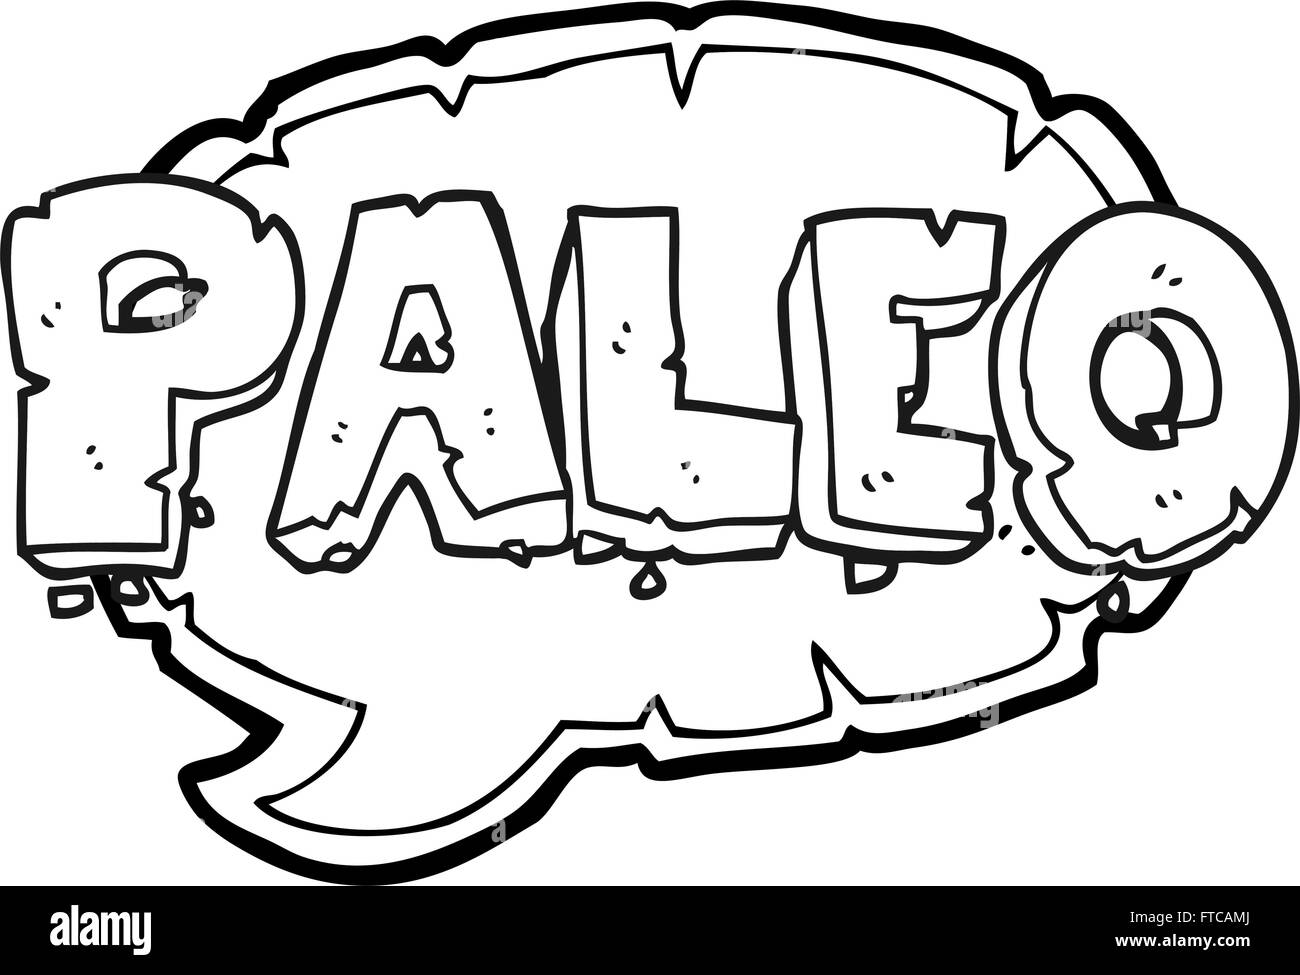 Paleo freihändig gezeichnet schwarz / weiß-Cartoon-Zeichen Stock Vektor